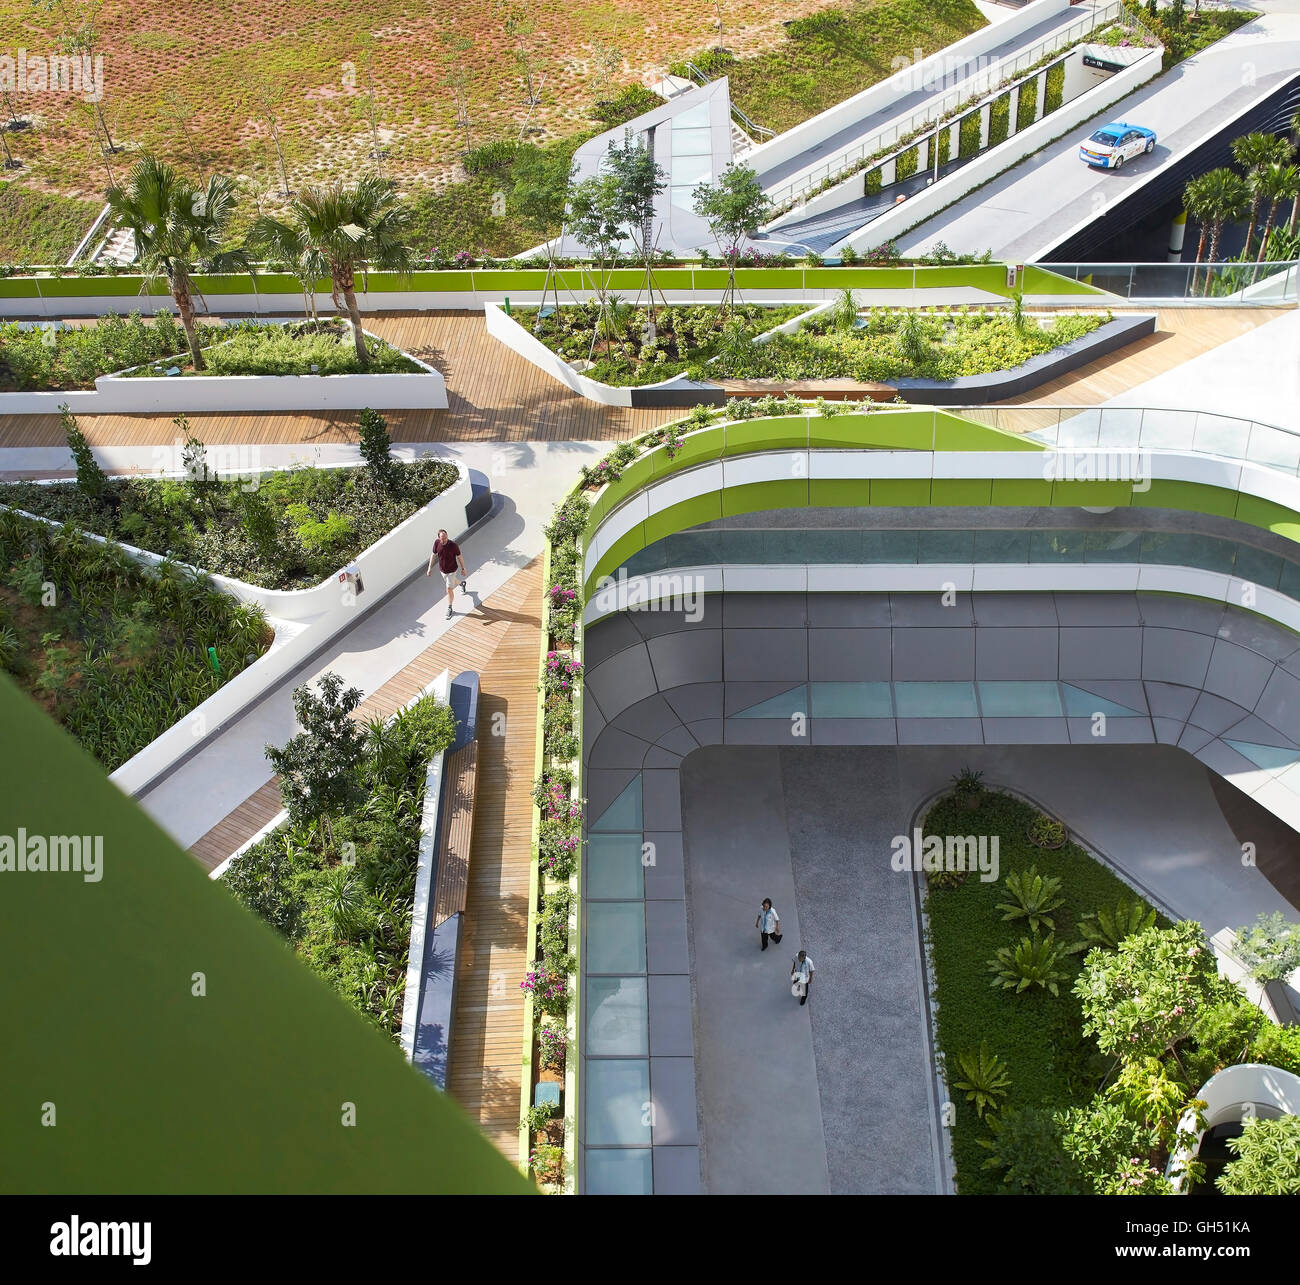 Blick von oben in Richtung Himmel Garten Gehwege und Hof zu öffnen. Singapur-Hochschule für Technik und Design, Singapur, Singapur. Architekt: UNStudio, 2015. Stockfoto